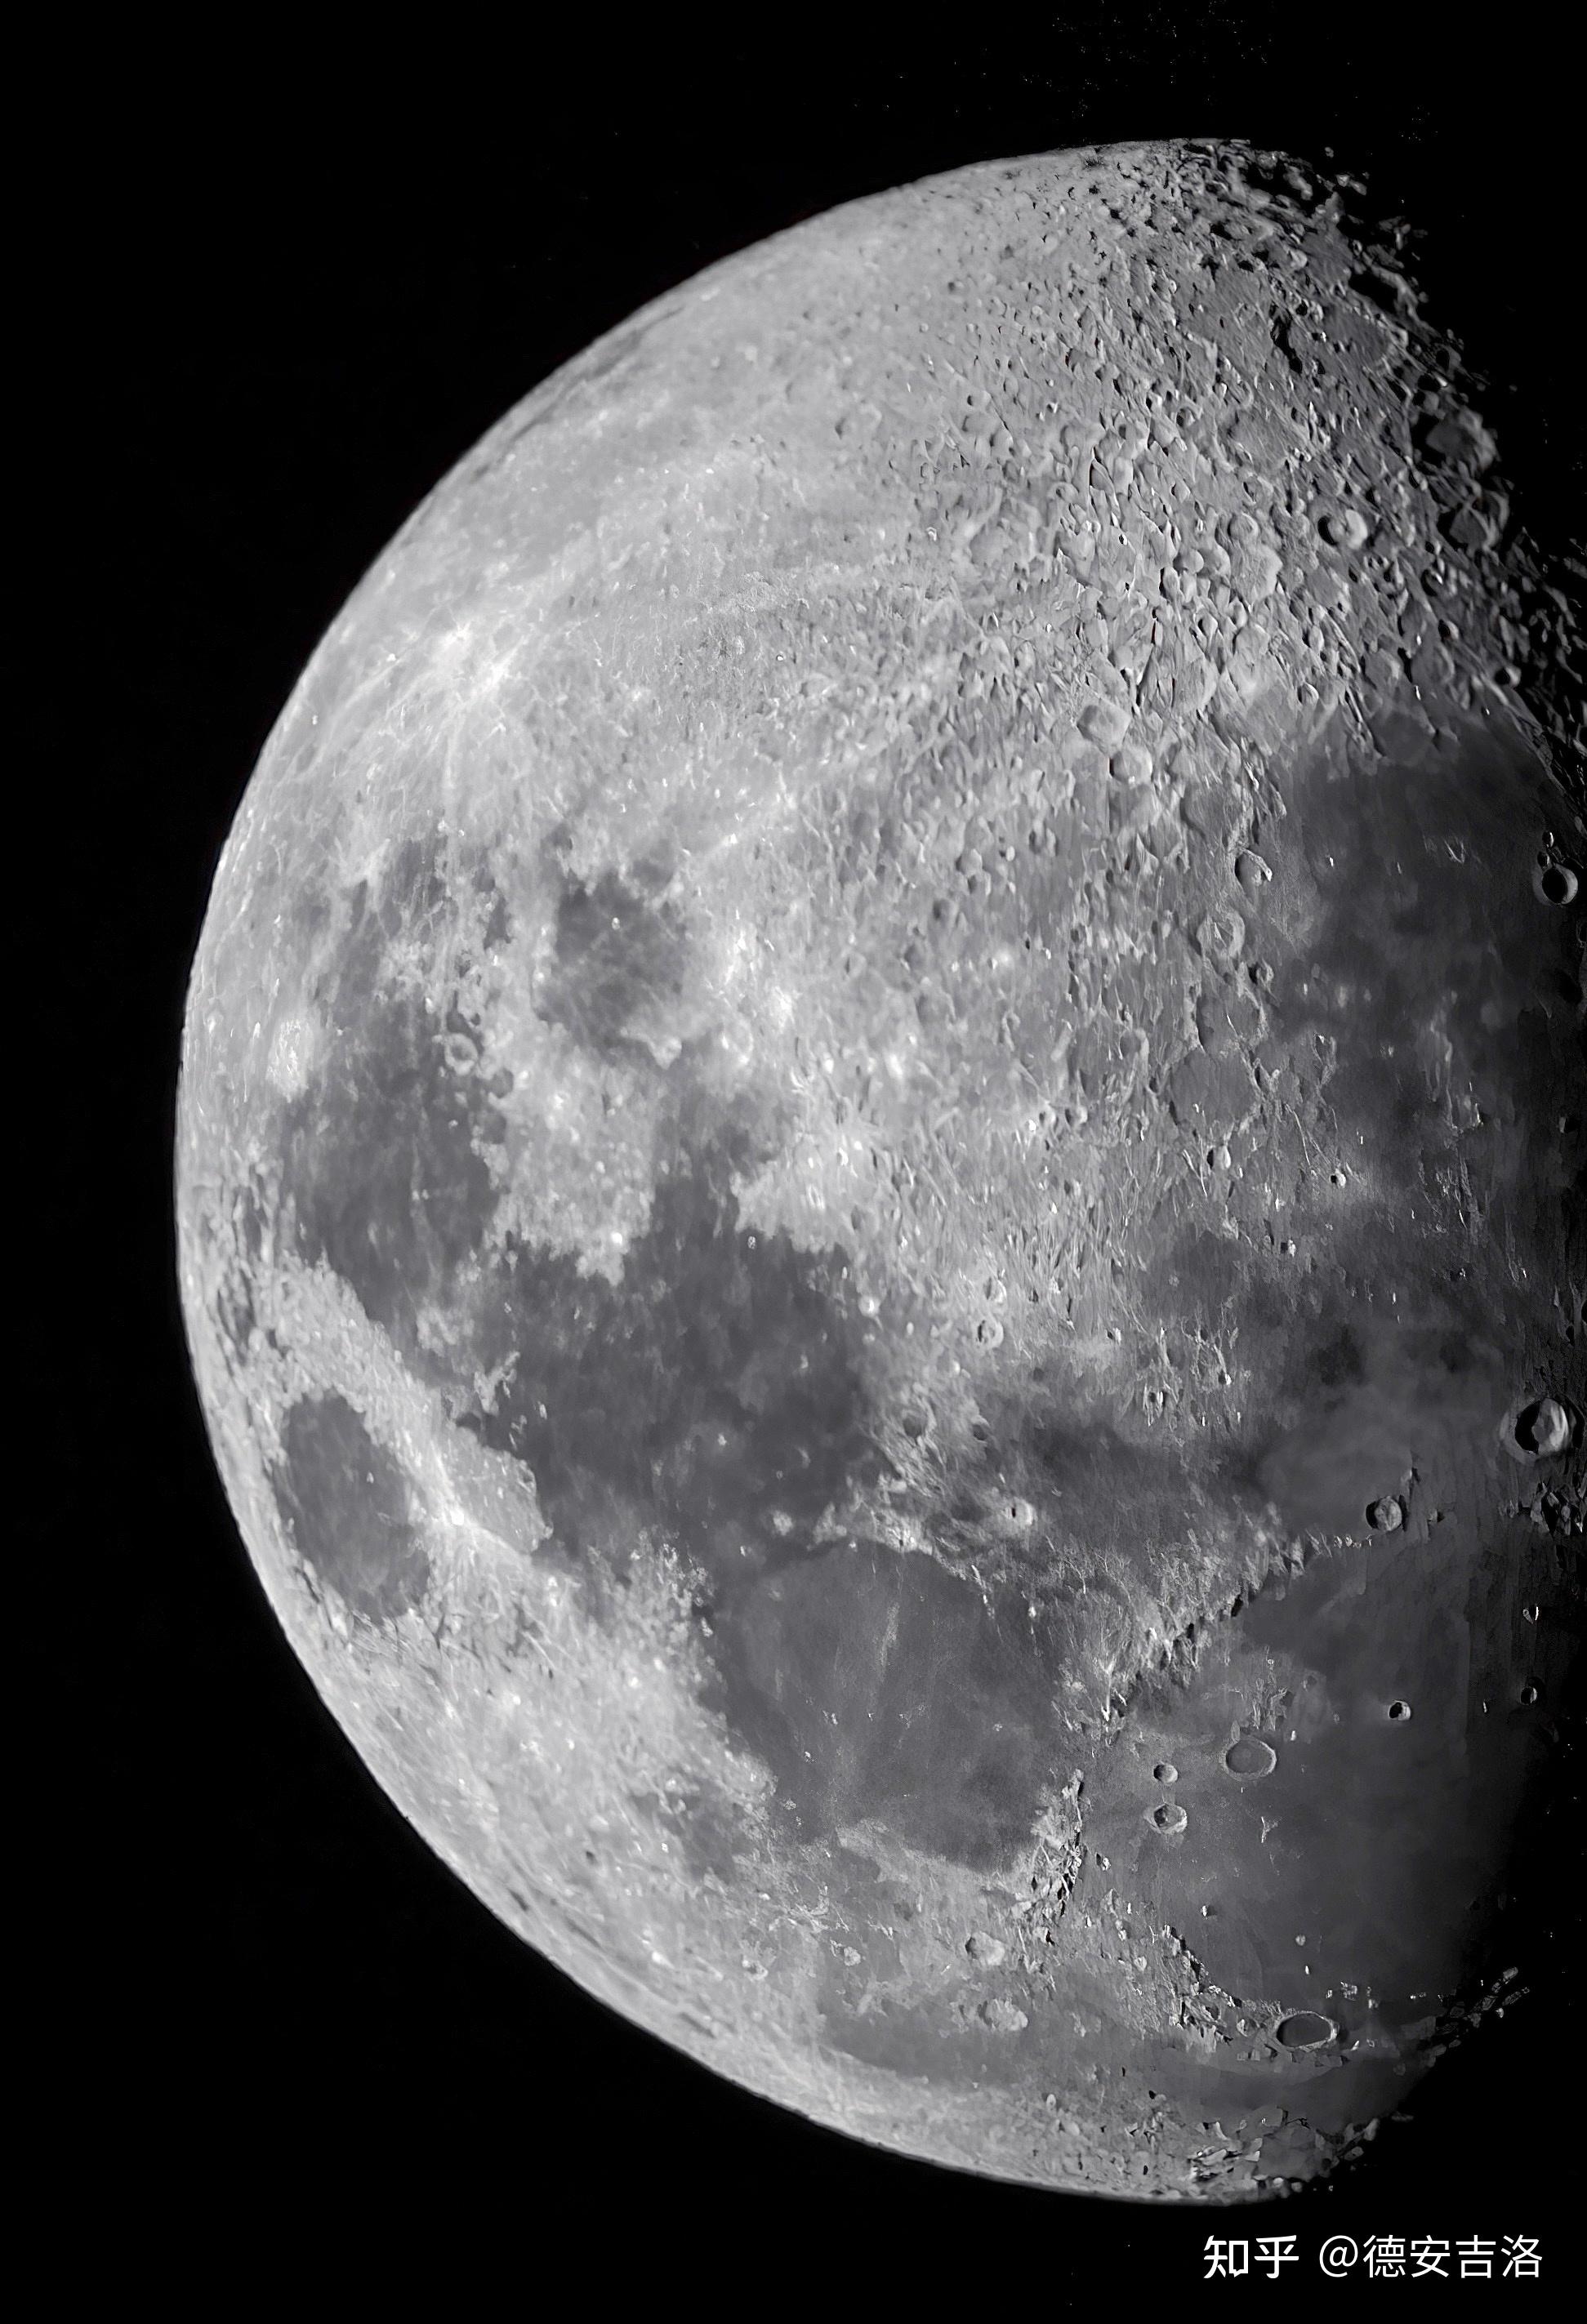 请问这样的月球照片需要拿怎样的镜头来拍